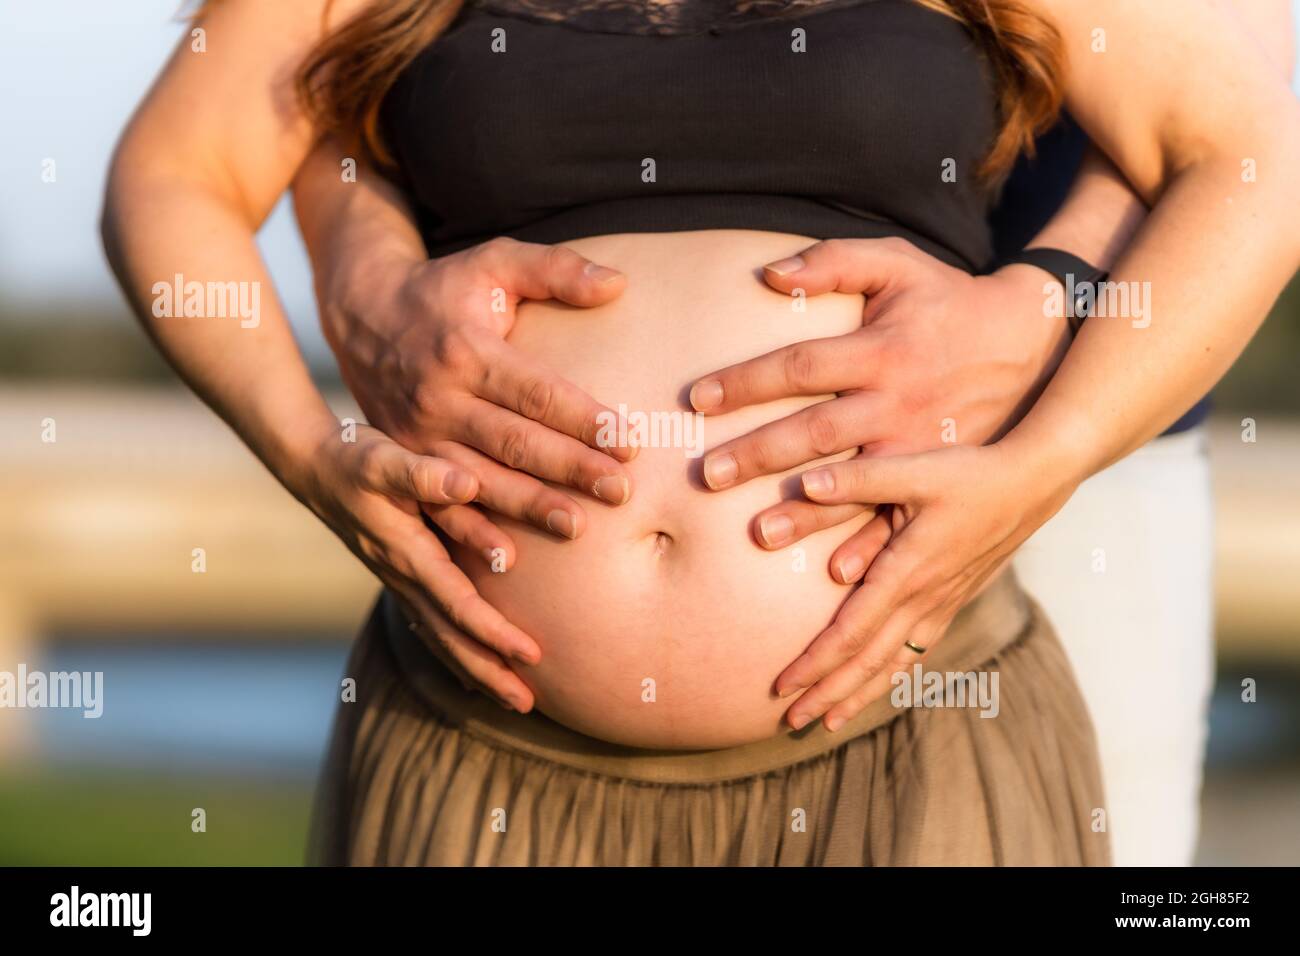 Vue rapprochée de quatre mains sur l'abdomen d'une femme enceinte adulte debout à l'extérieur Banque D'Images